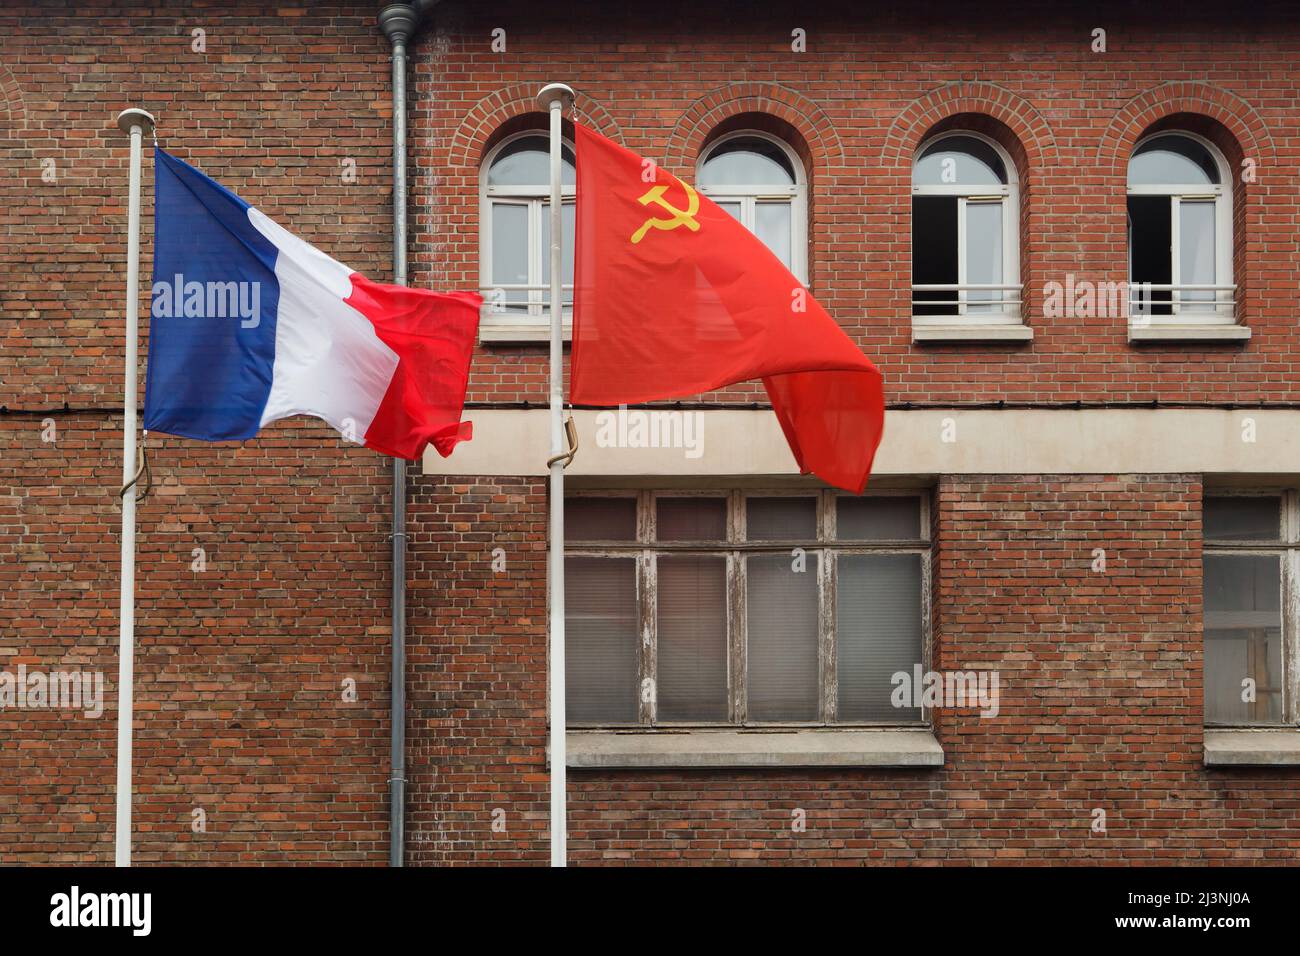 Am Eingang des Museums der Kapitulation (Musée de la Redadition) in Reims, Frankreich, winken die Nationalflaggen Frankreichs und der Sowjetunion. Das erste deutsche Kapitulationsinstrument, das den Zweiten Weltkrieg in Europa beendete, wurde in diesem Gebäude am 7. Mai 1945 um 02:41 Uhr mitteleuropäischer Zeit (MEZ) unterzeichnet. Stockfoto